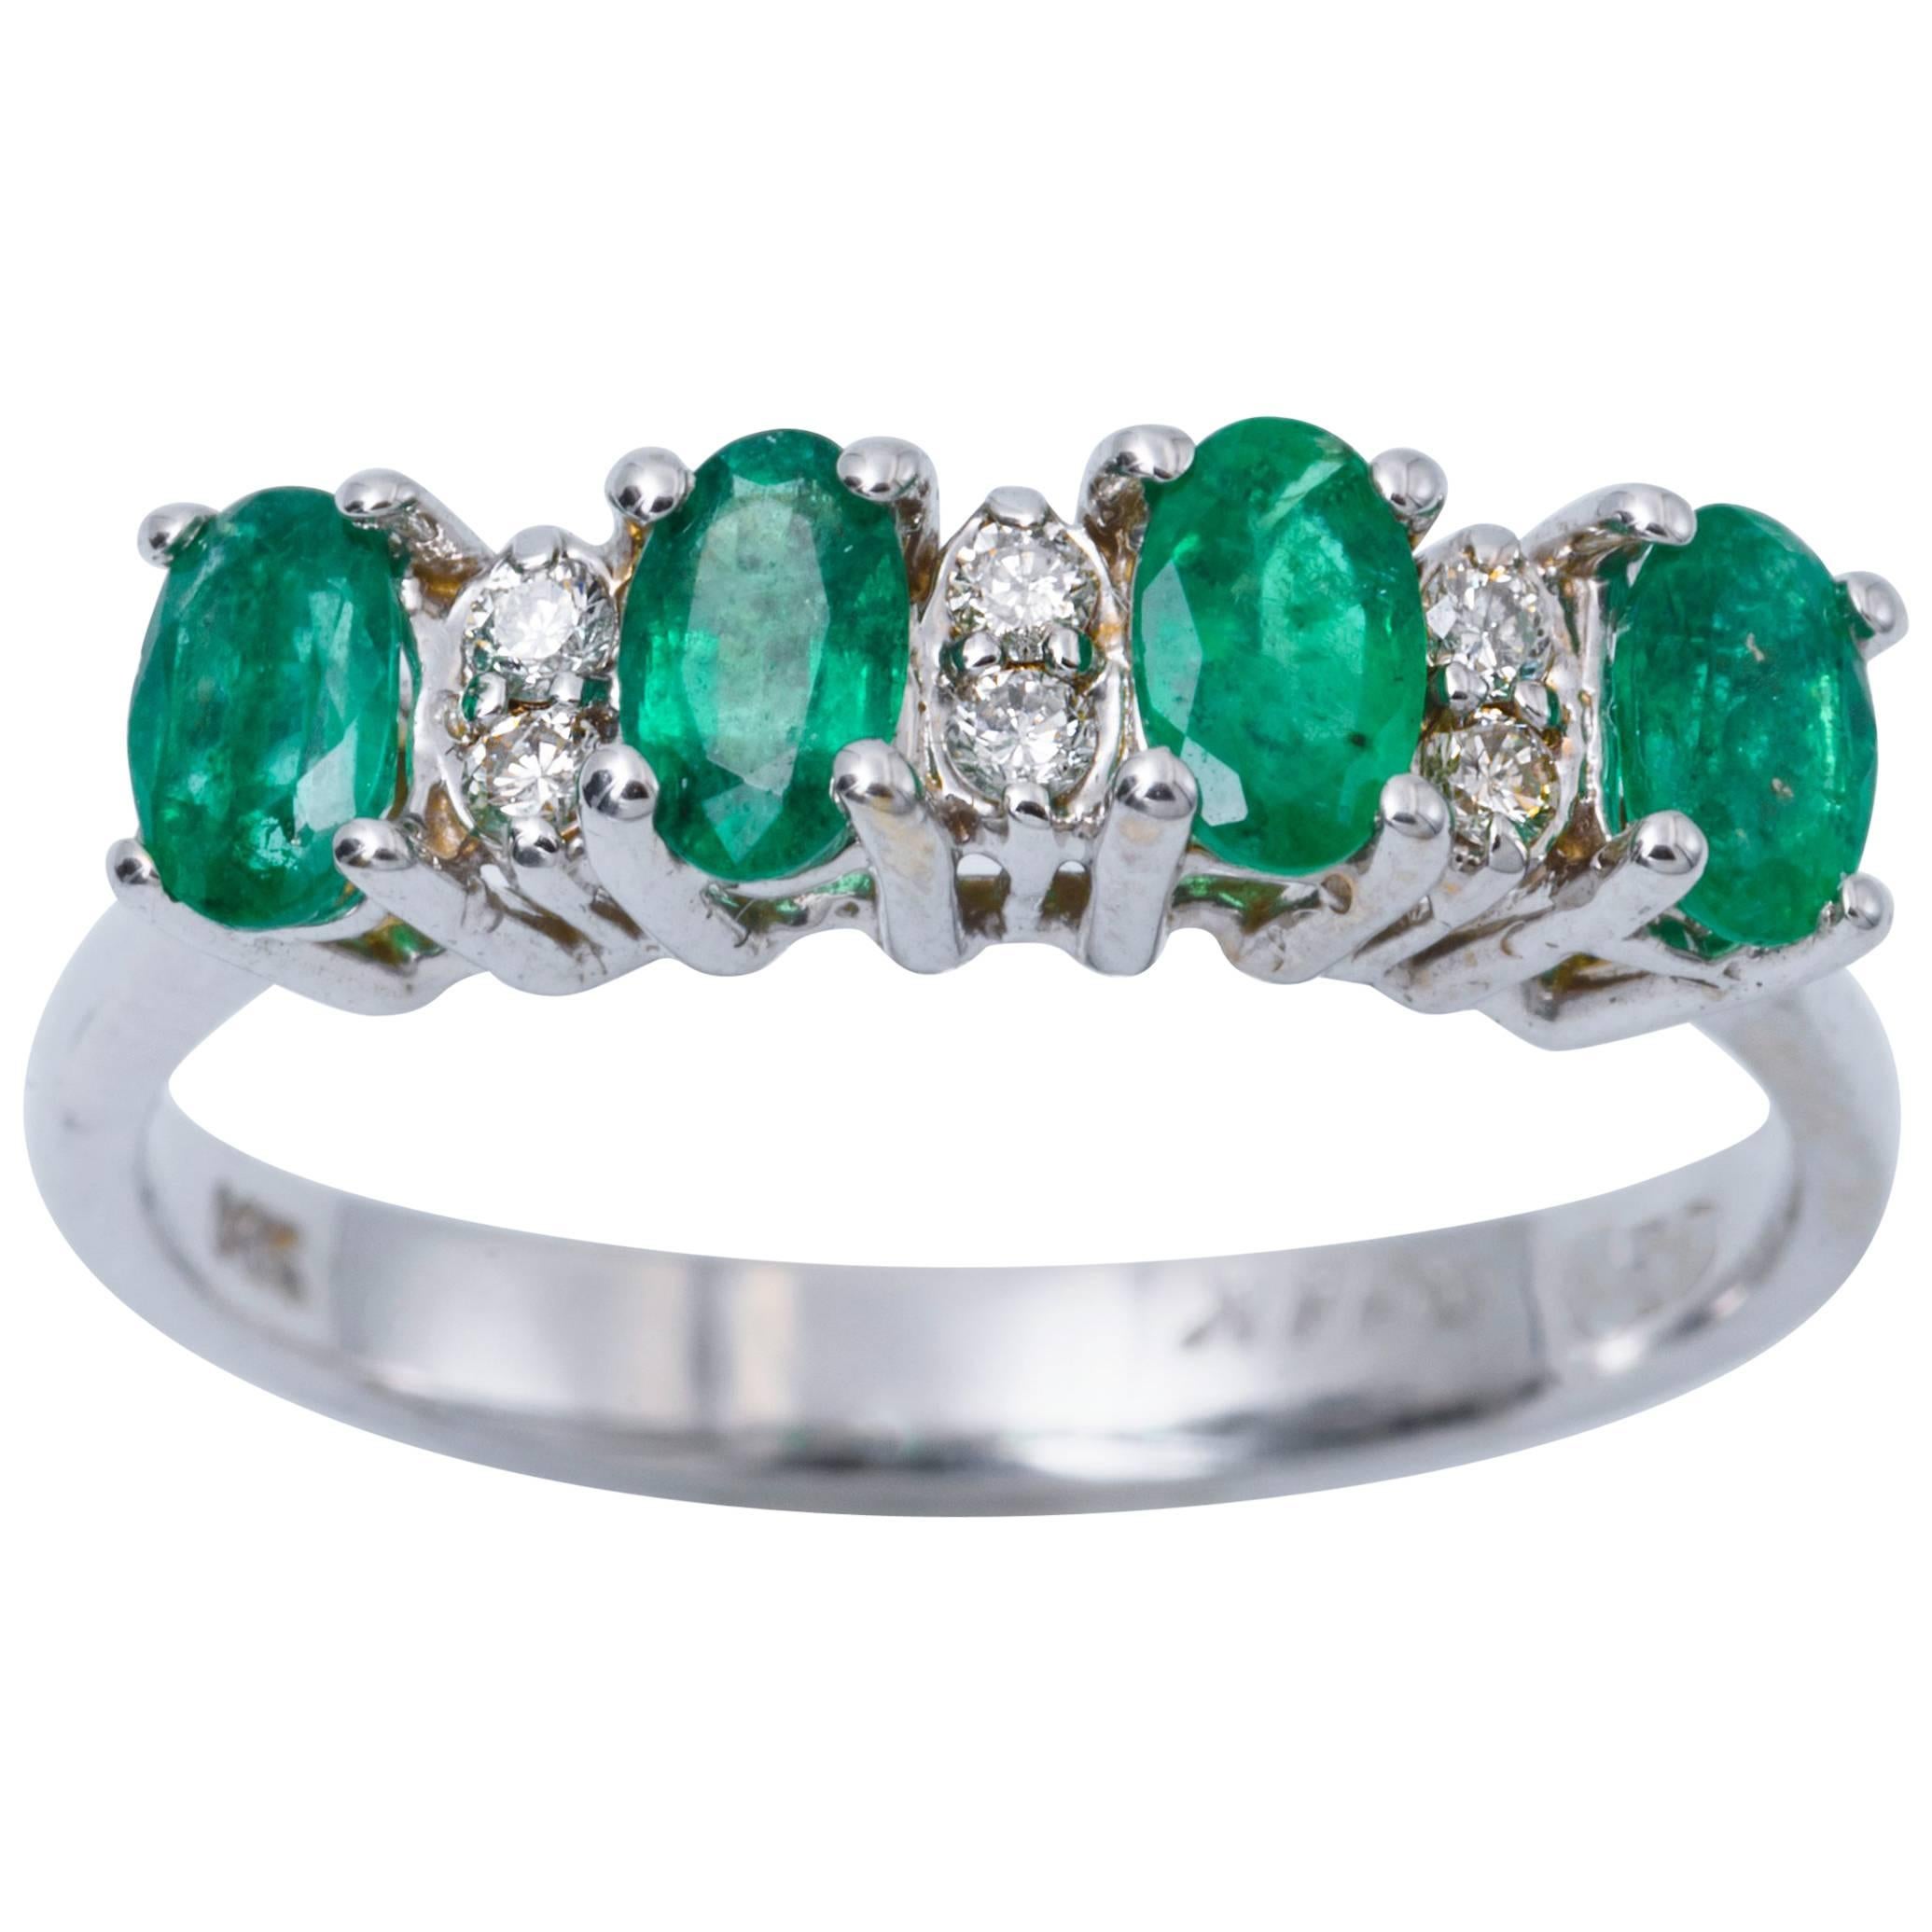 Four Oval Shape Zambian Emeralds and Diamonds Band Ring